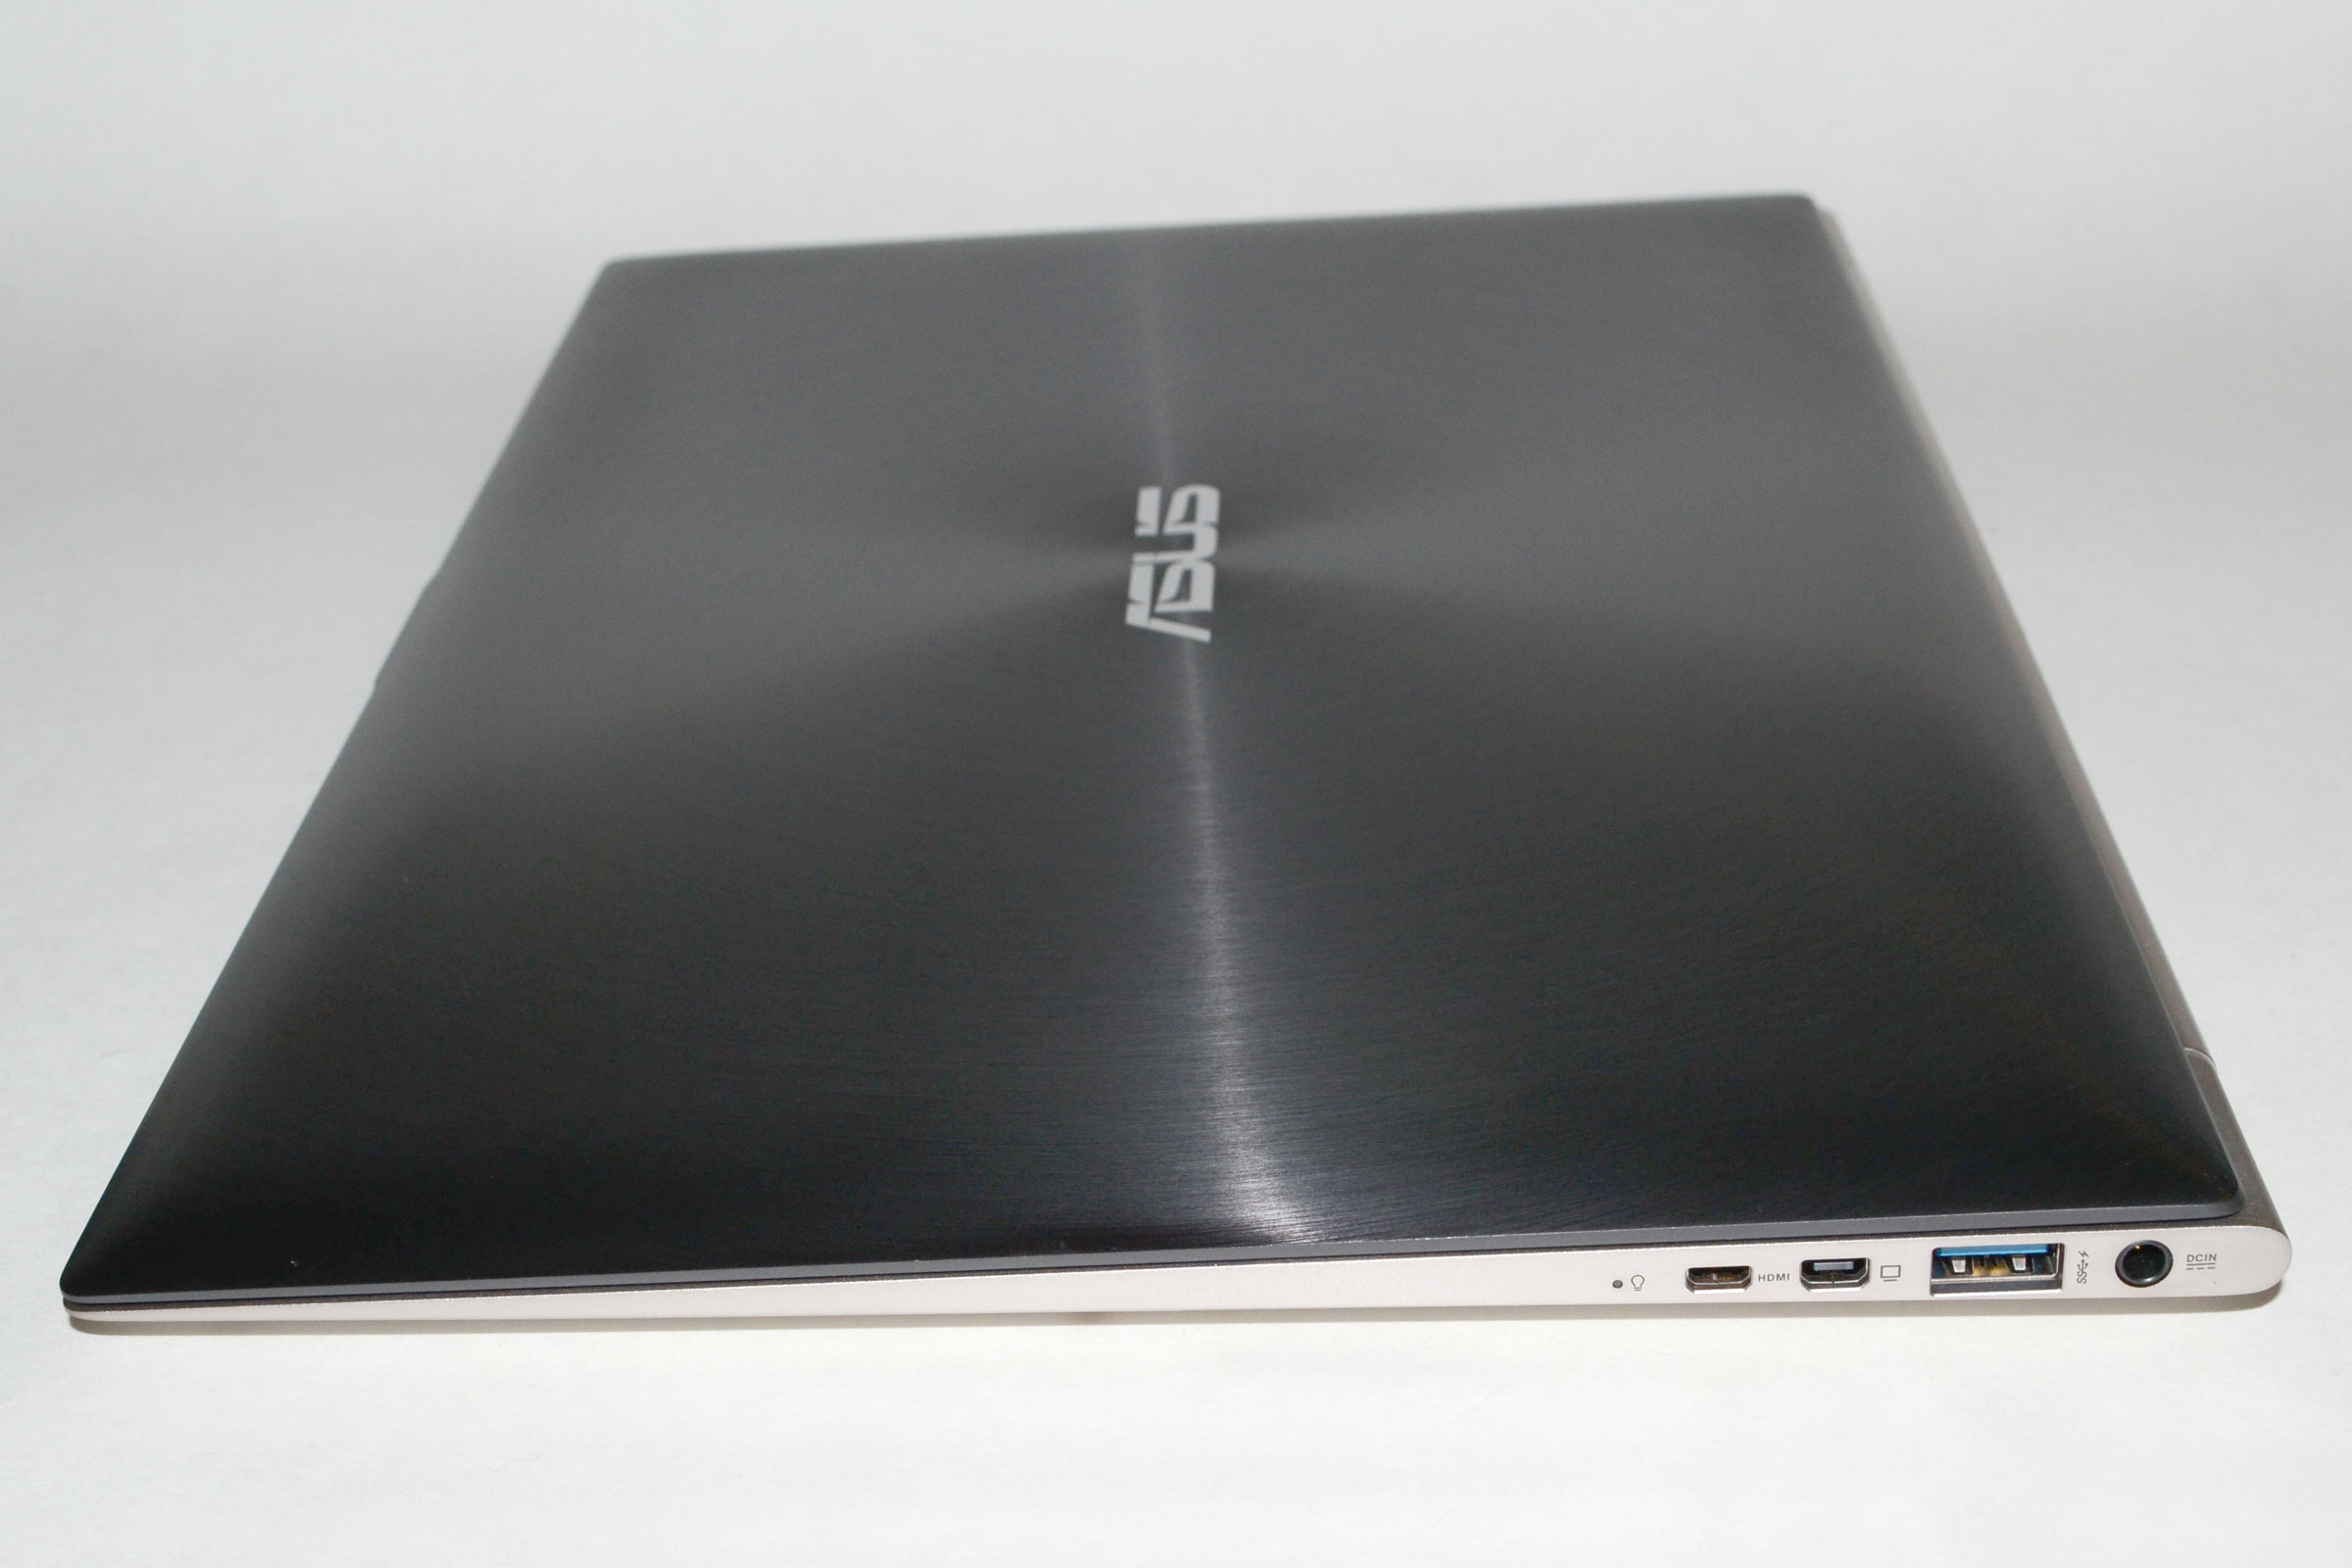 Asus Zenbook UX31A Touch Screen Core I5 3317u, Ram 4G, 128G SSD, Full HD, WIN 8, 